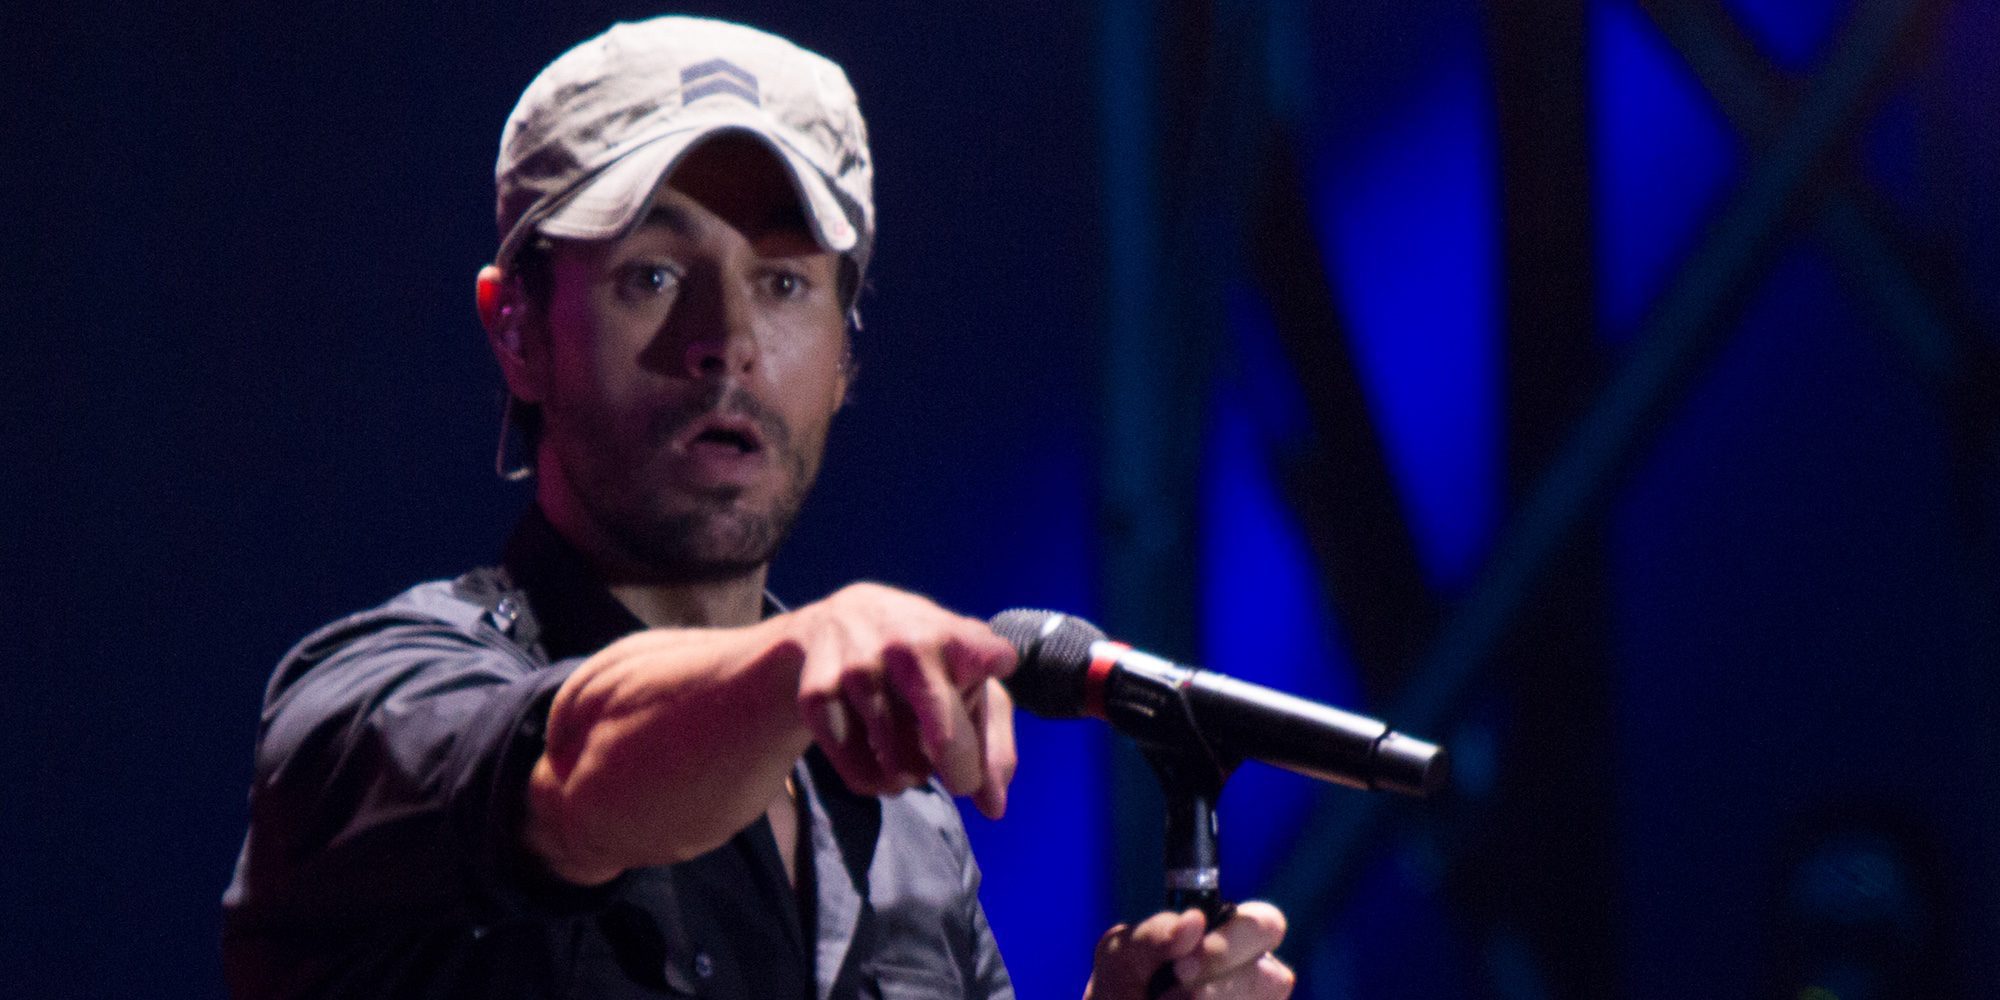 Pitidos hacia Enrique Iglesias en su único concierto en España: "Manos arriba, esto es un atraco"